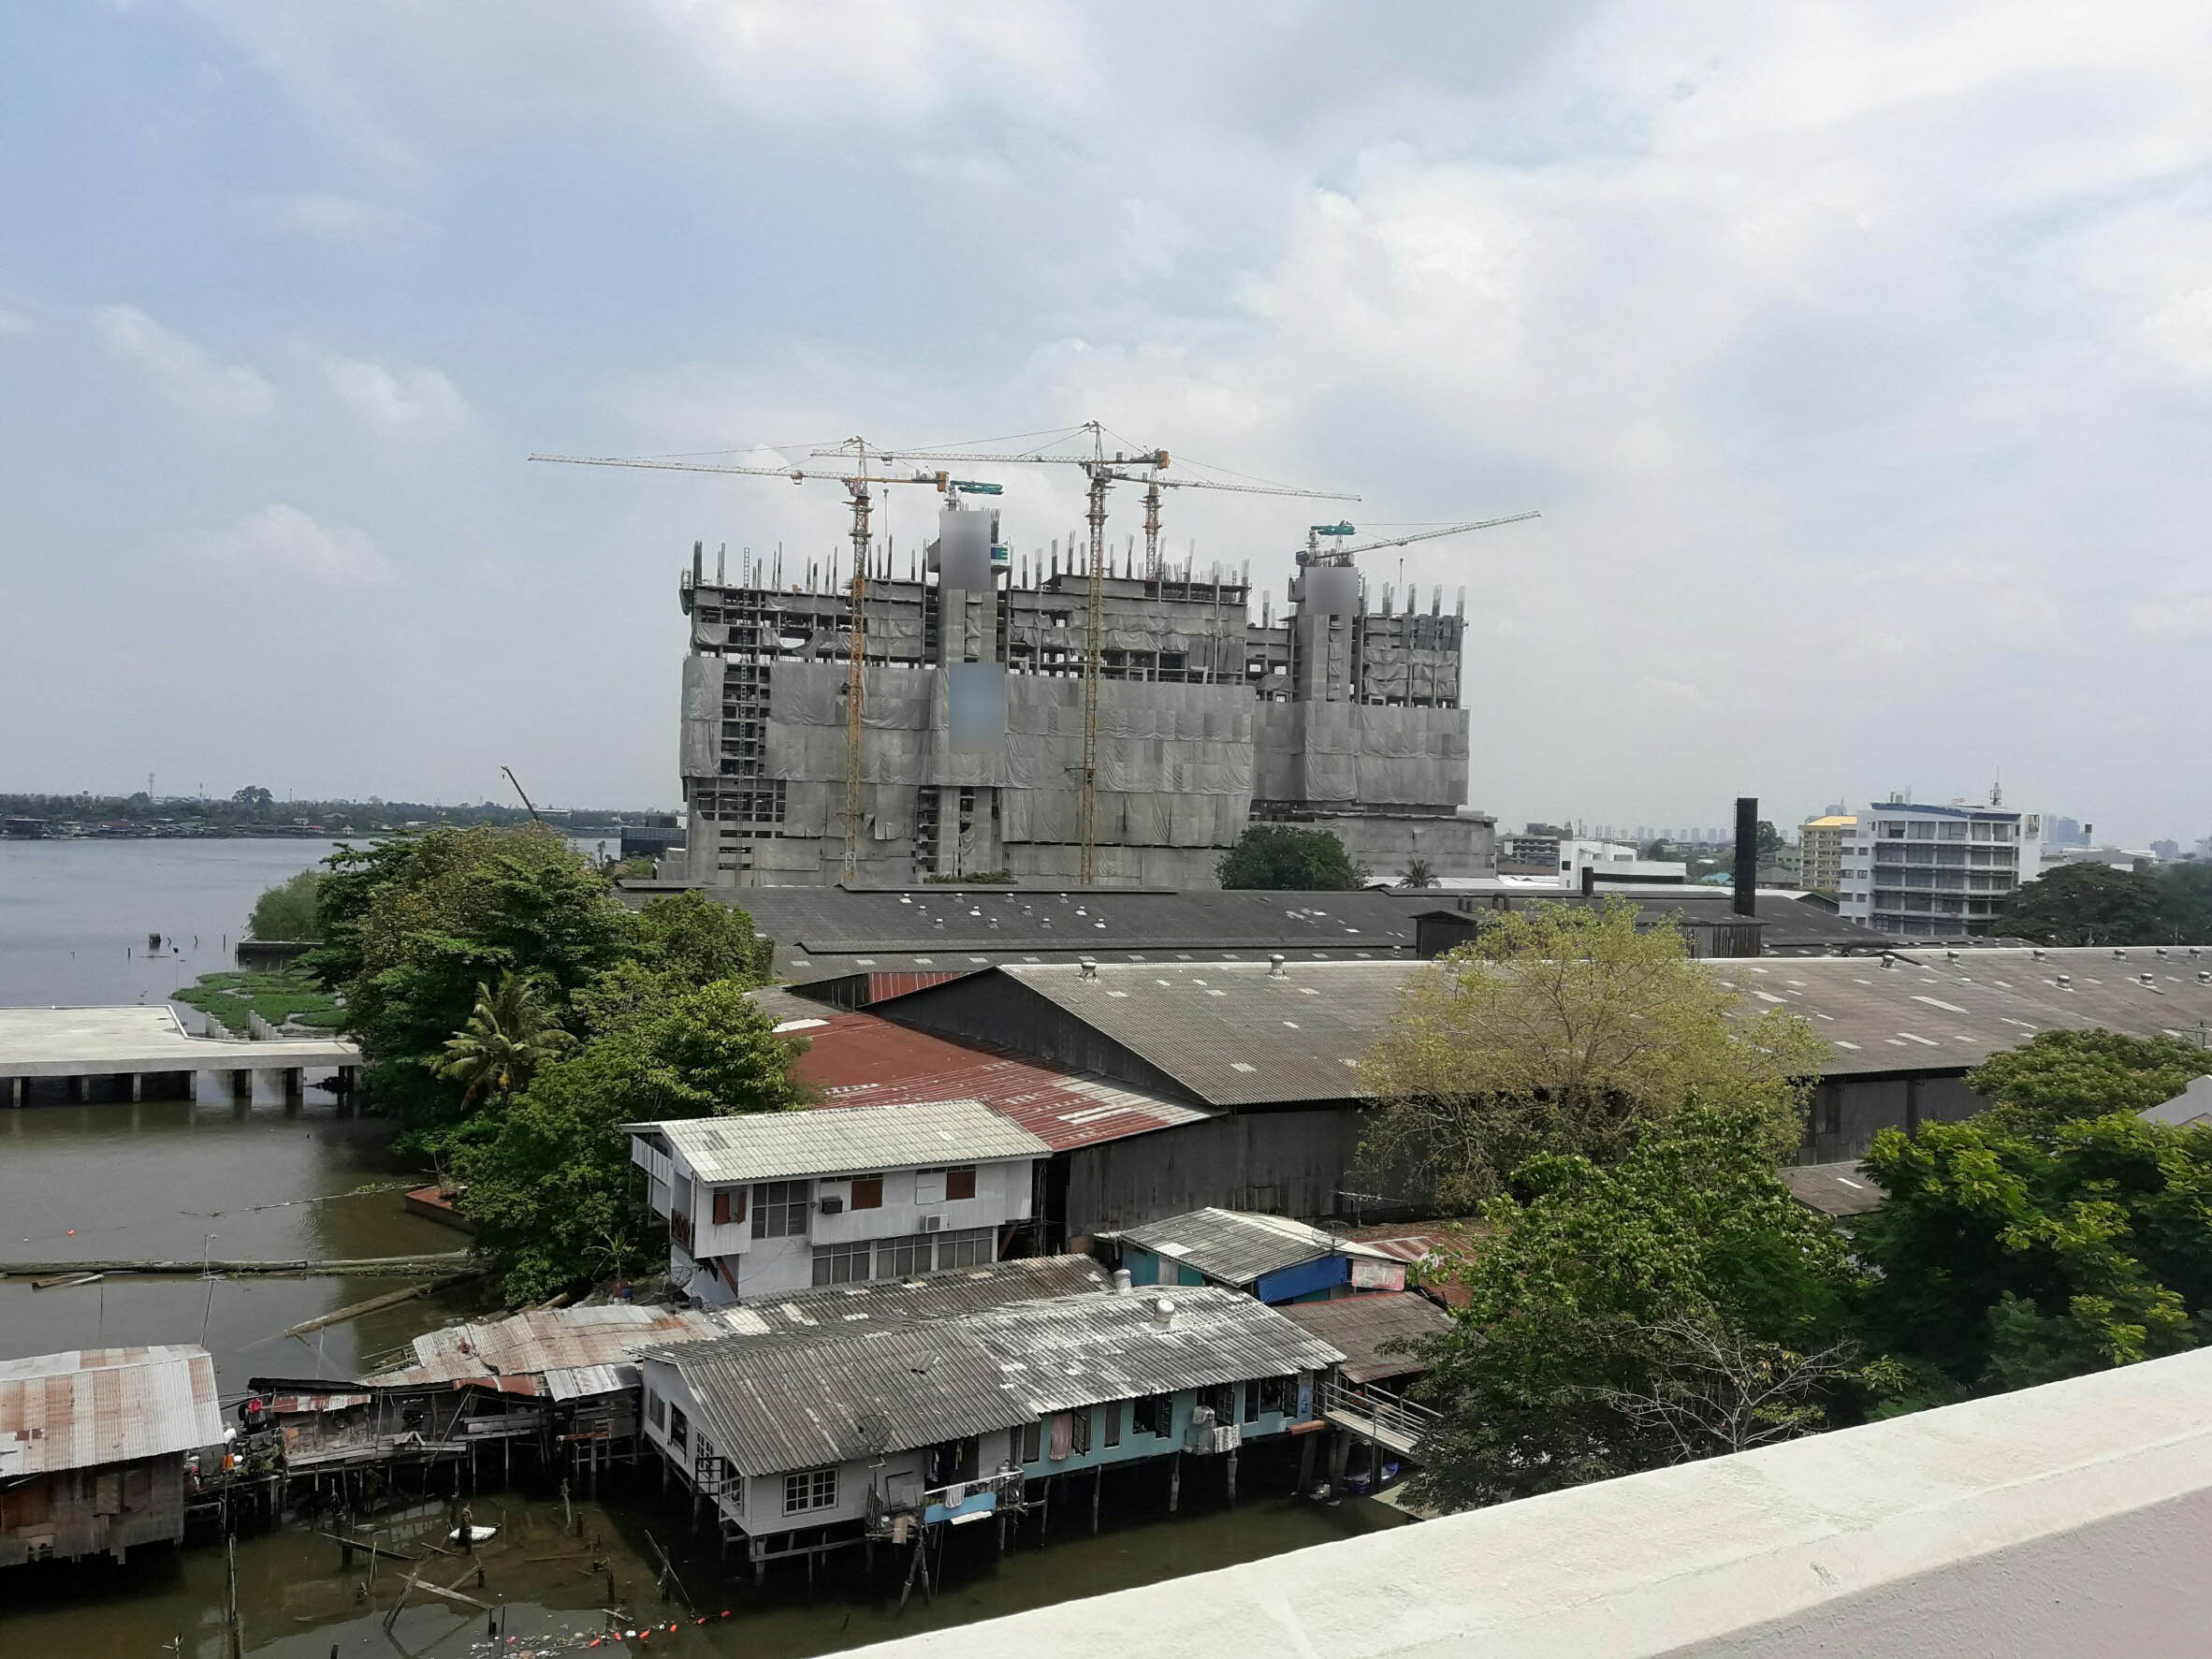 ภาพบรรยากาศโดยรอบของอาคารริมแม่น้ำเจ้าพระยาที่อยู่ระหว่างการก่อสร้าง